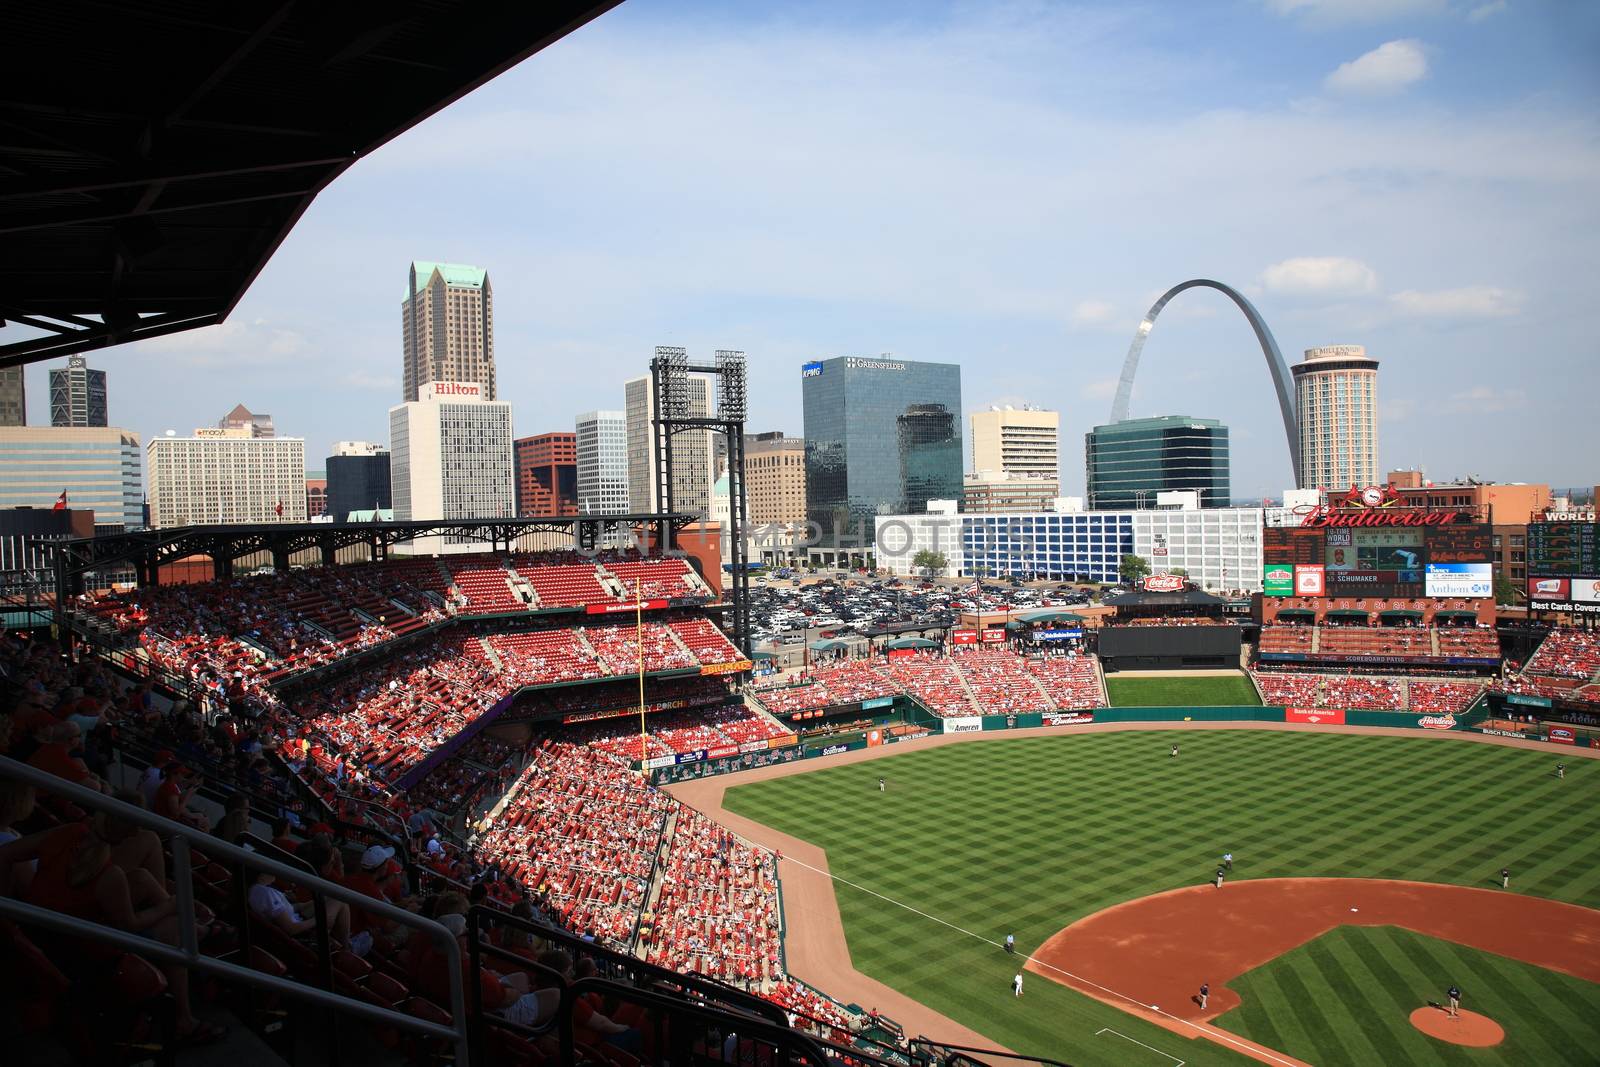 Busch Stadium - St. Louis Cardinals by Ffooter